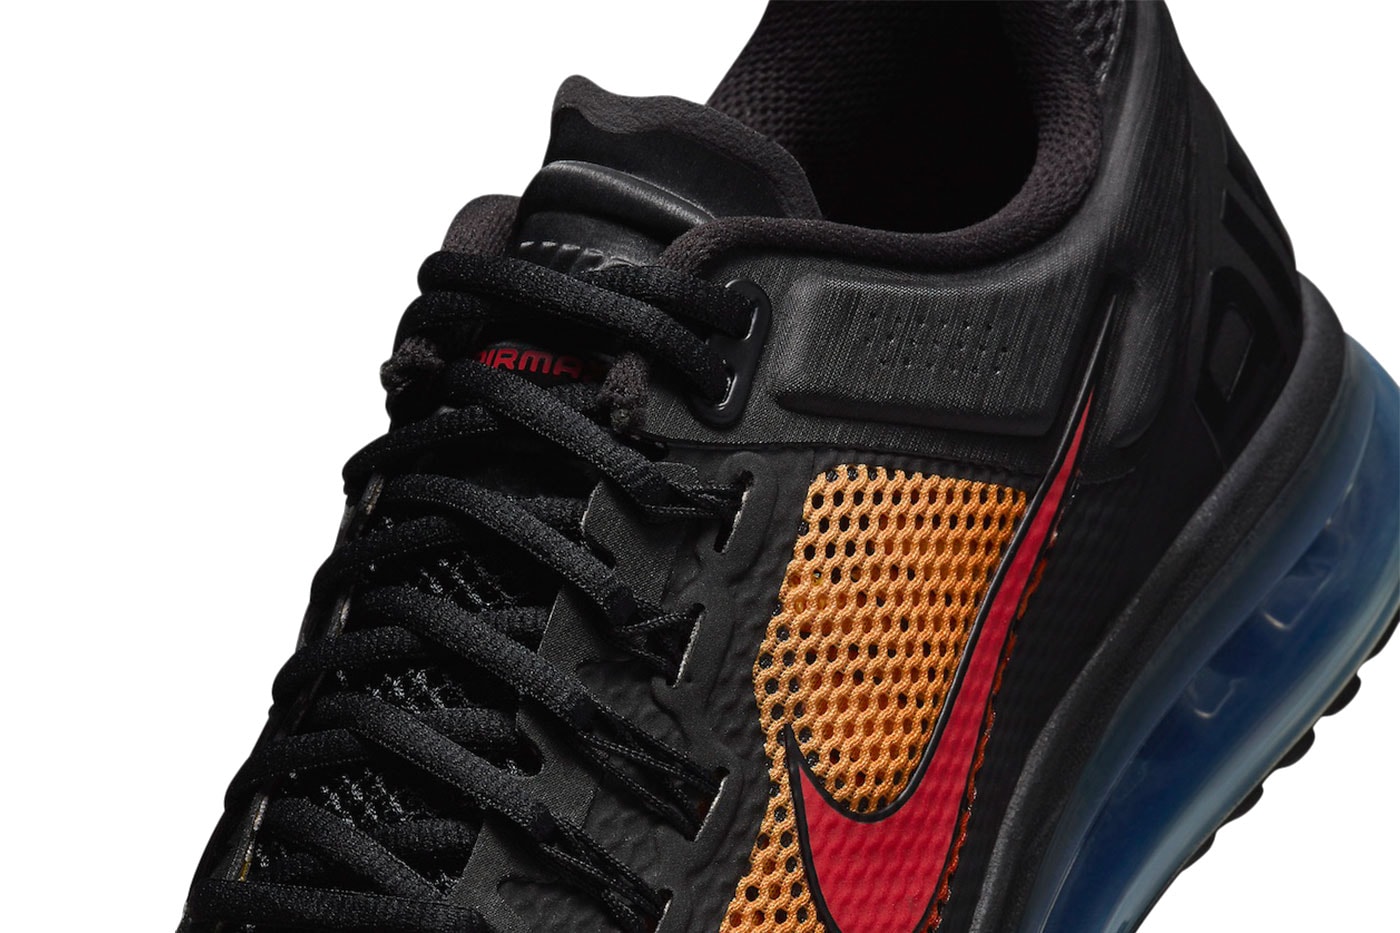 ナイキエアマックス2013から“マップラ”の人気OGカラー “サンセット”を踏襲した新色が登場 Nike Air Max 2013 Sunset Release Info 